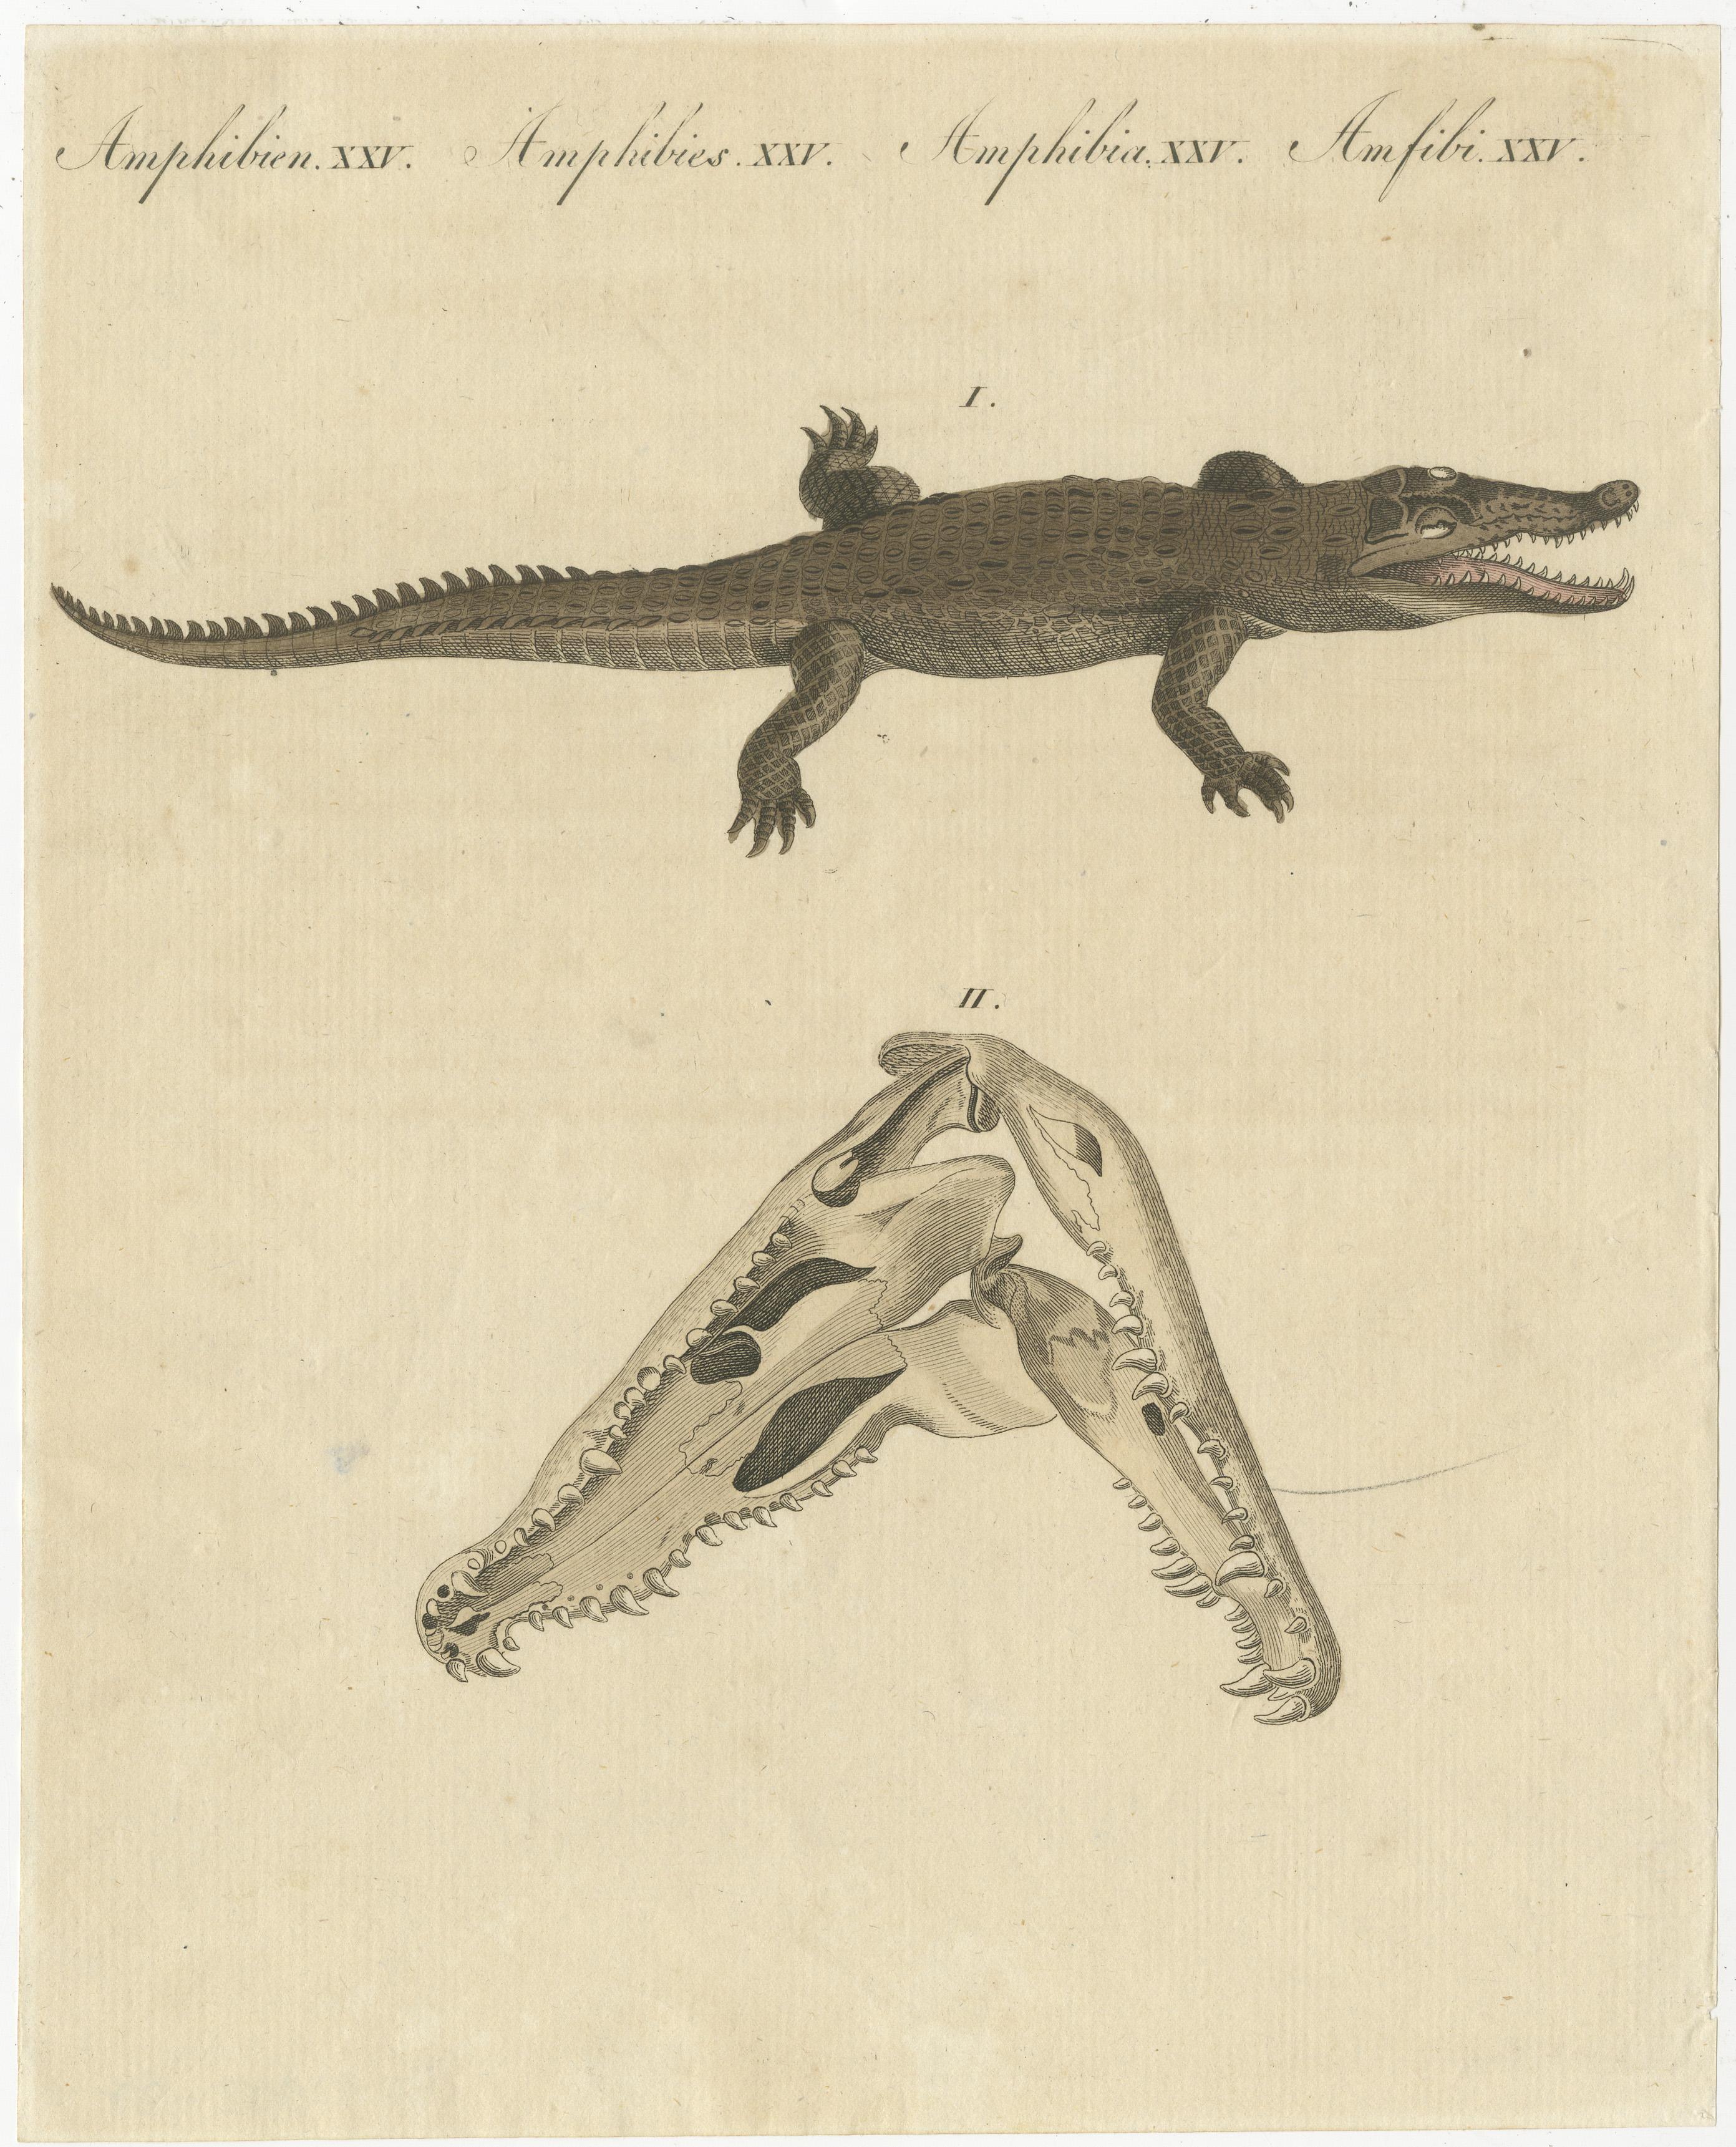 Paper Antique Print of the Santo Domingo Crocodile and a Crocodile Skull For Sale